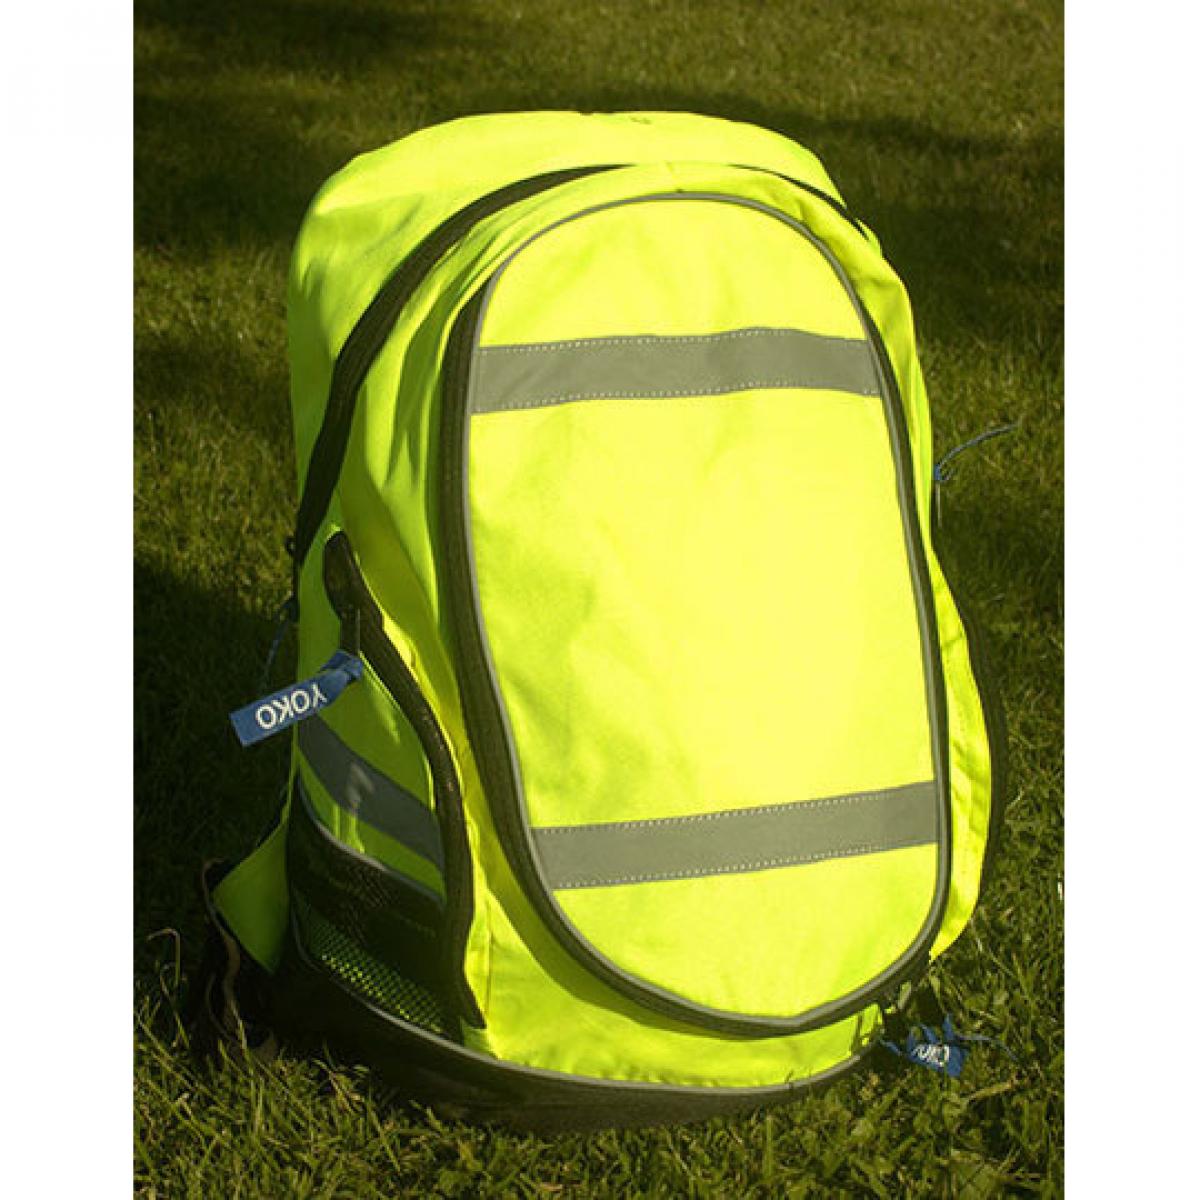 Hersteller: YOKO Herstellernummer: SH8001 Artikelbezeichnung: Hi-Vis London Backpack 42x28x15 cm Farbe: Hi-Vis Yellow